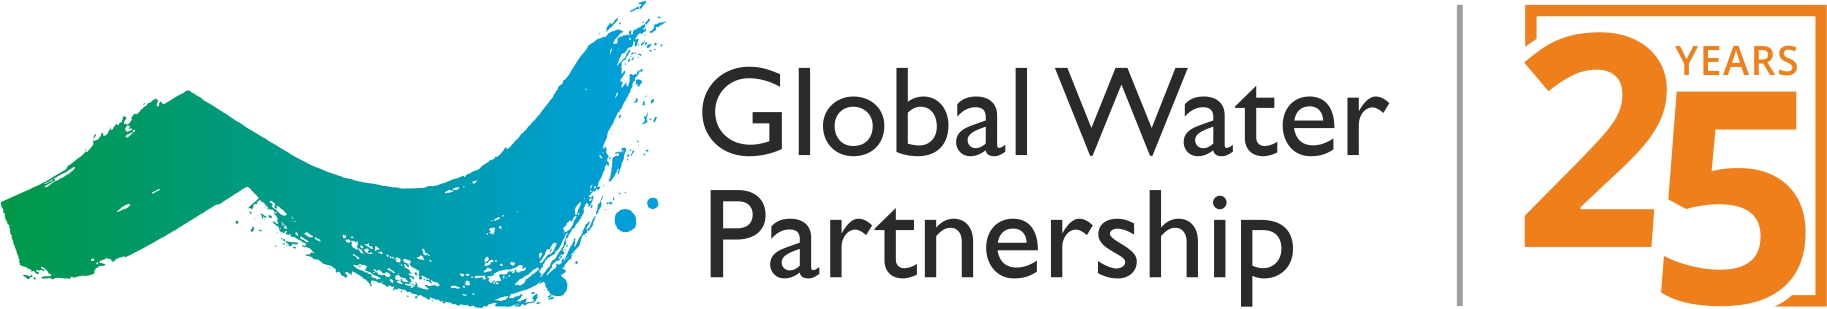 GWP@25 Logo Global